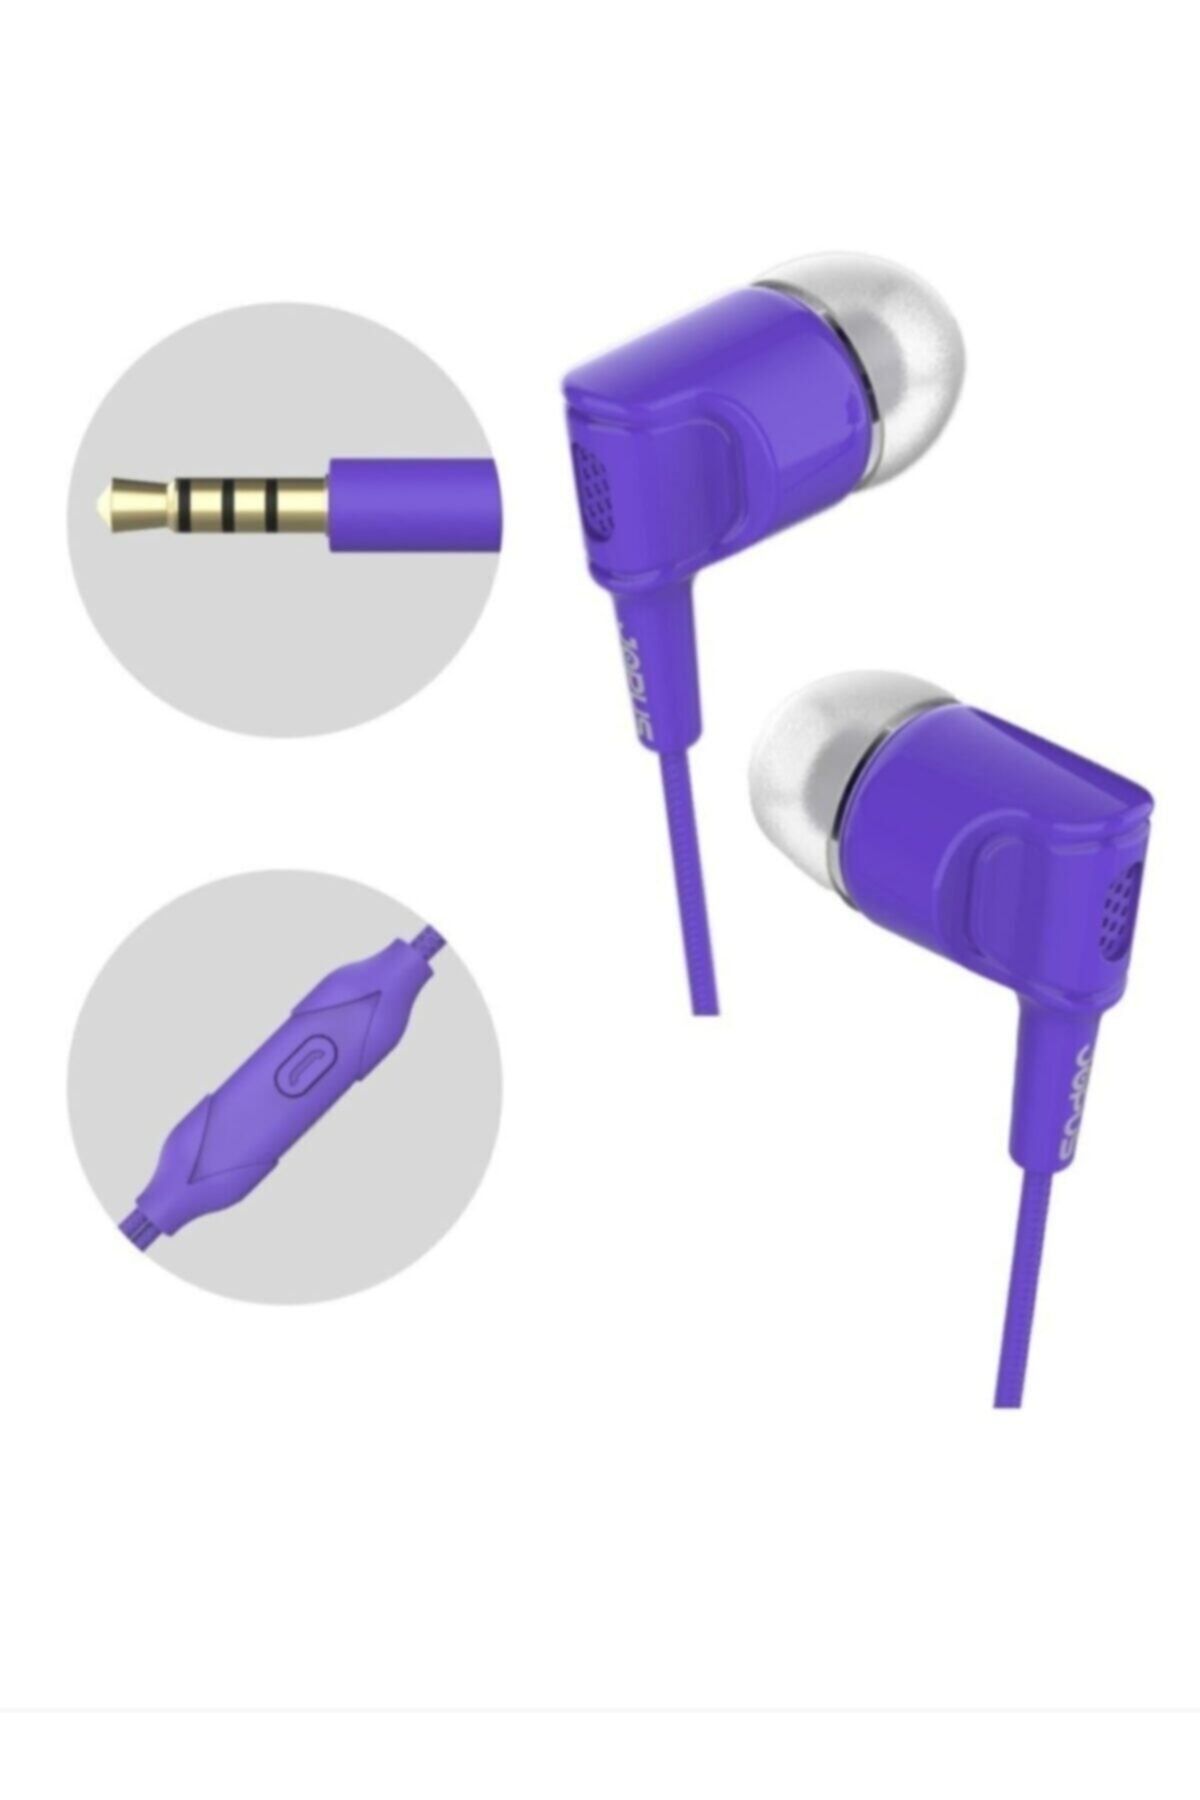 Accordion Mikrofonlu Kulak Içi Kulaklık Tuşlu Silikonlu Mor 3.5mm Universal Jak Giriş Jok52 Yeni_1